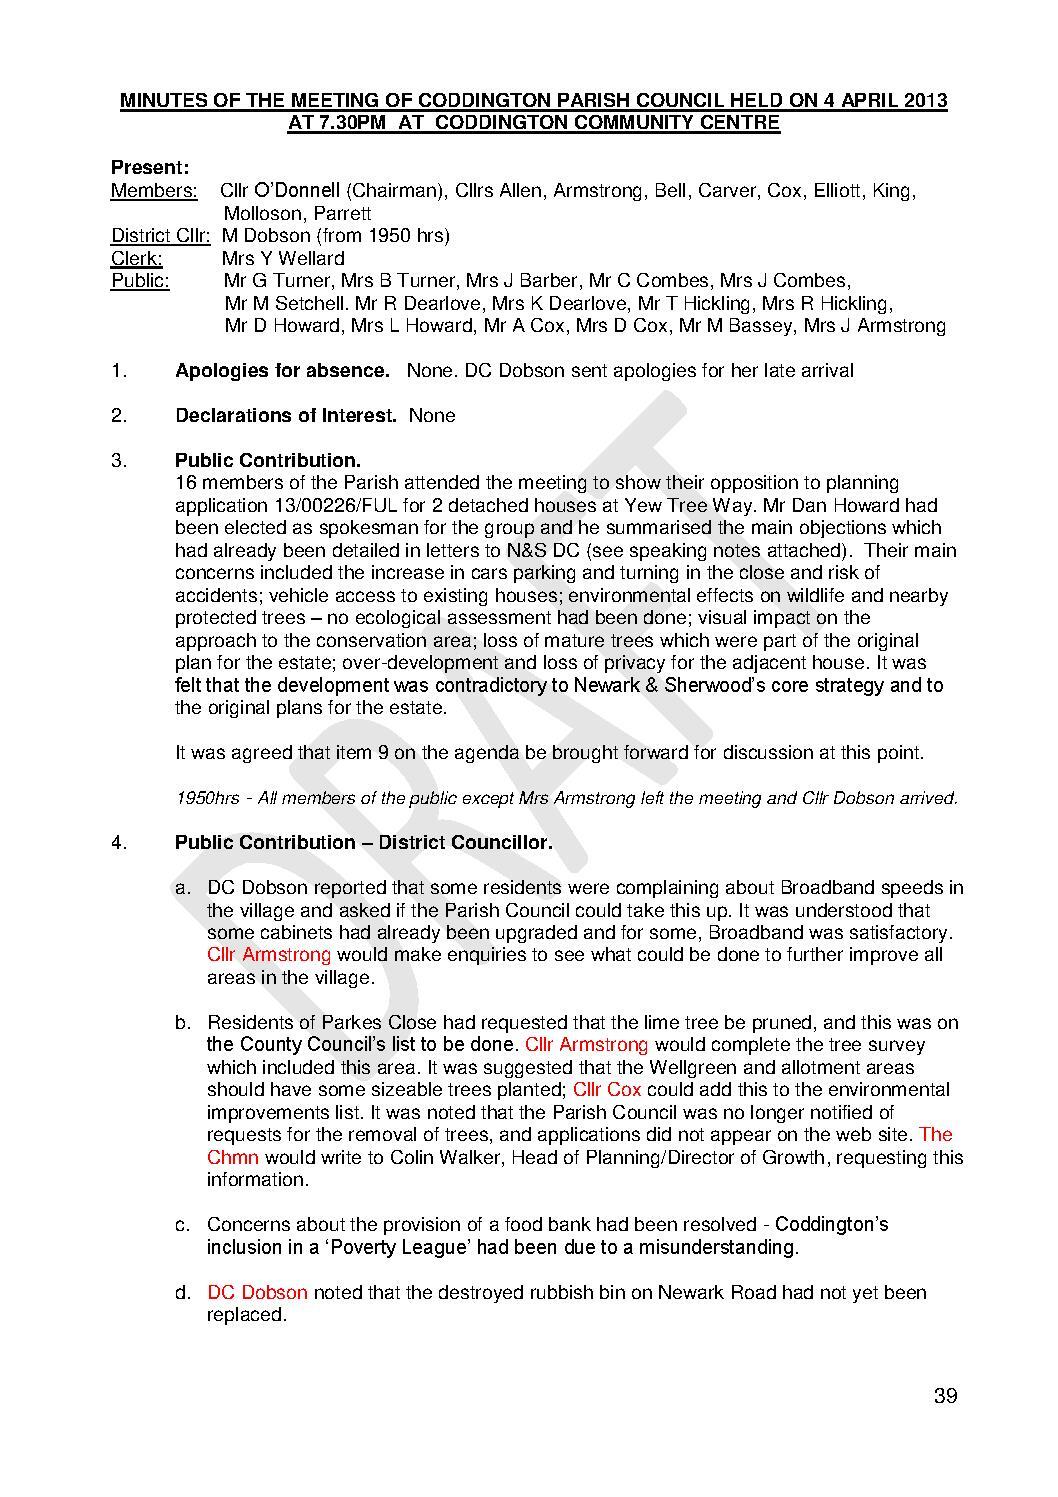 Parish Council Meeting 4 April 2013 Minutes